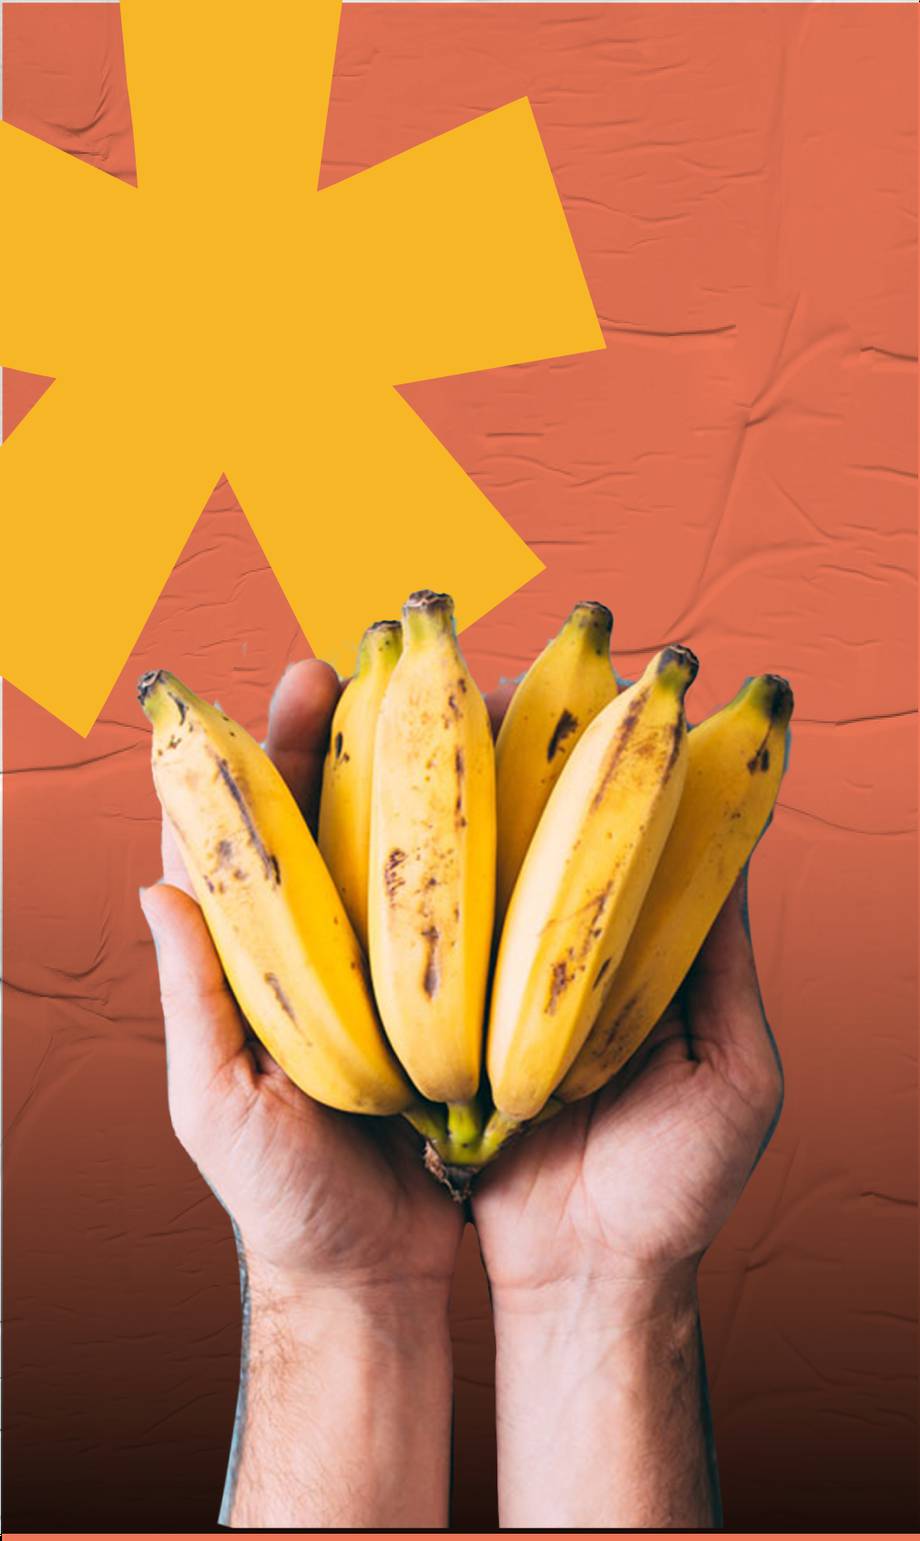 Trucos que te ayudarán a conservar los bananos de manera muy sencilla